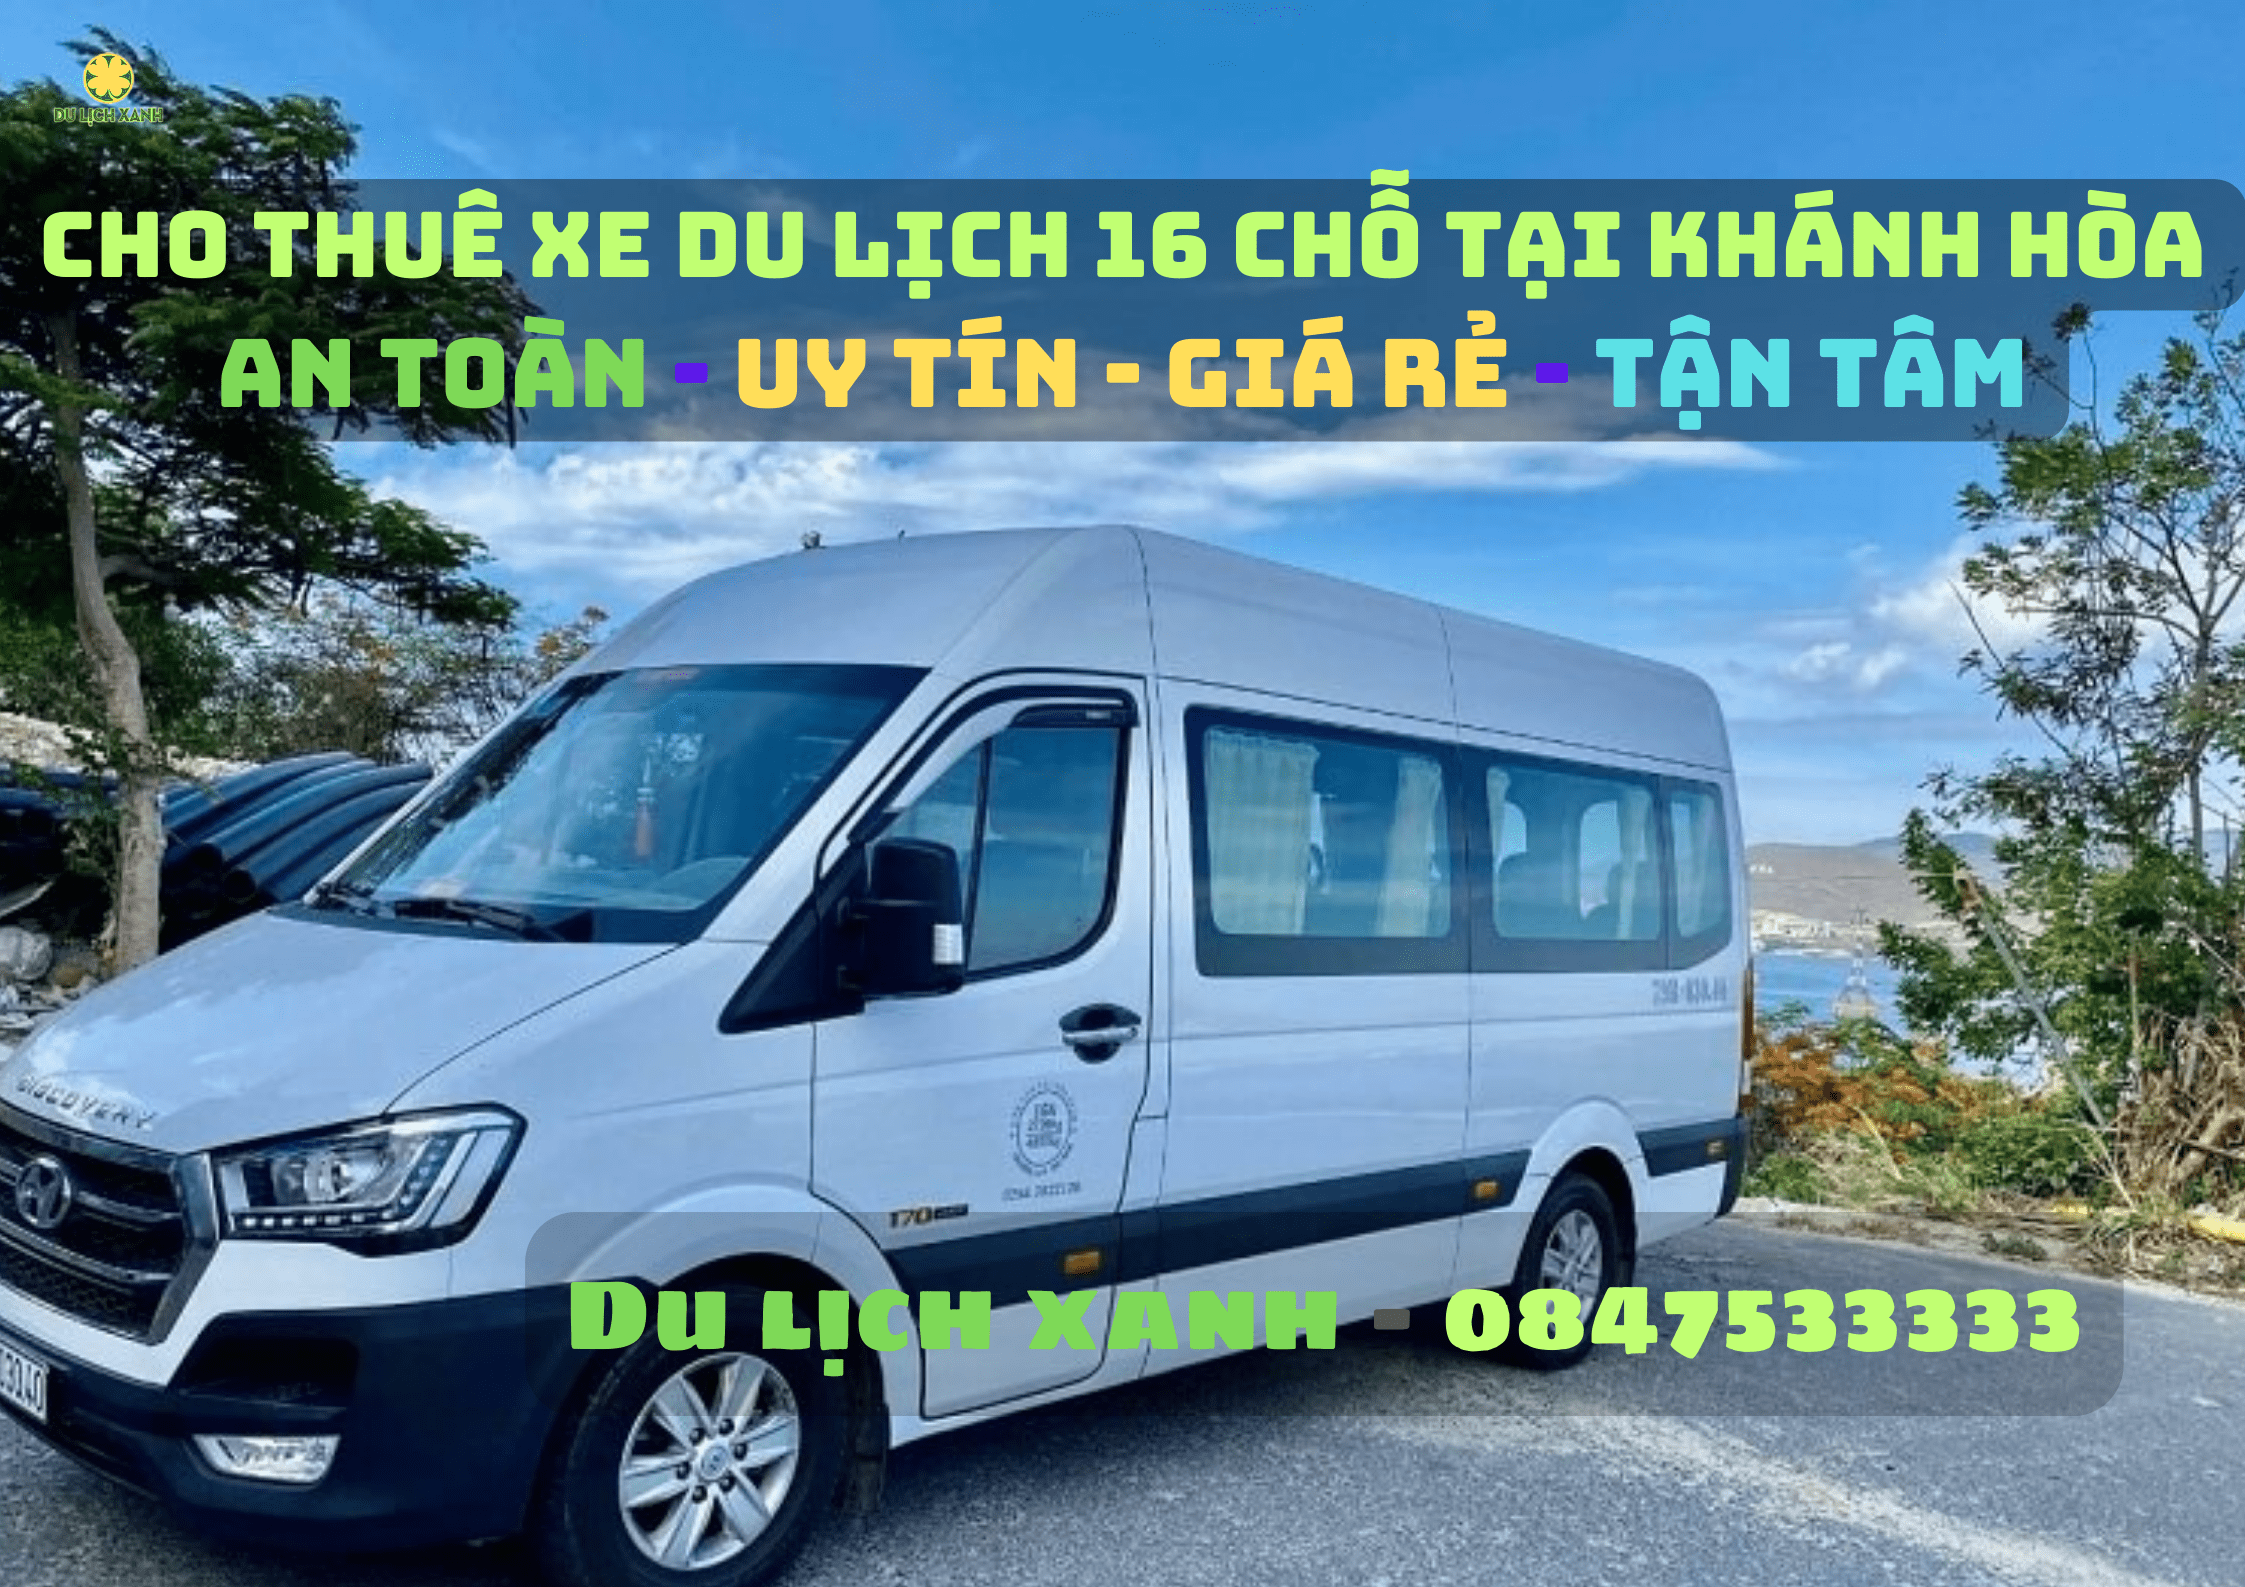 Dịch vụ cho thuê xe du lịch 16 chỗ tại Khánh Hòa